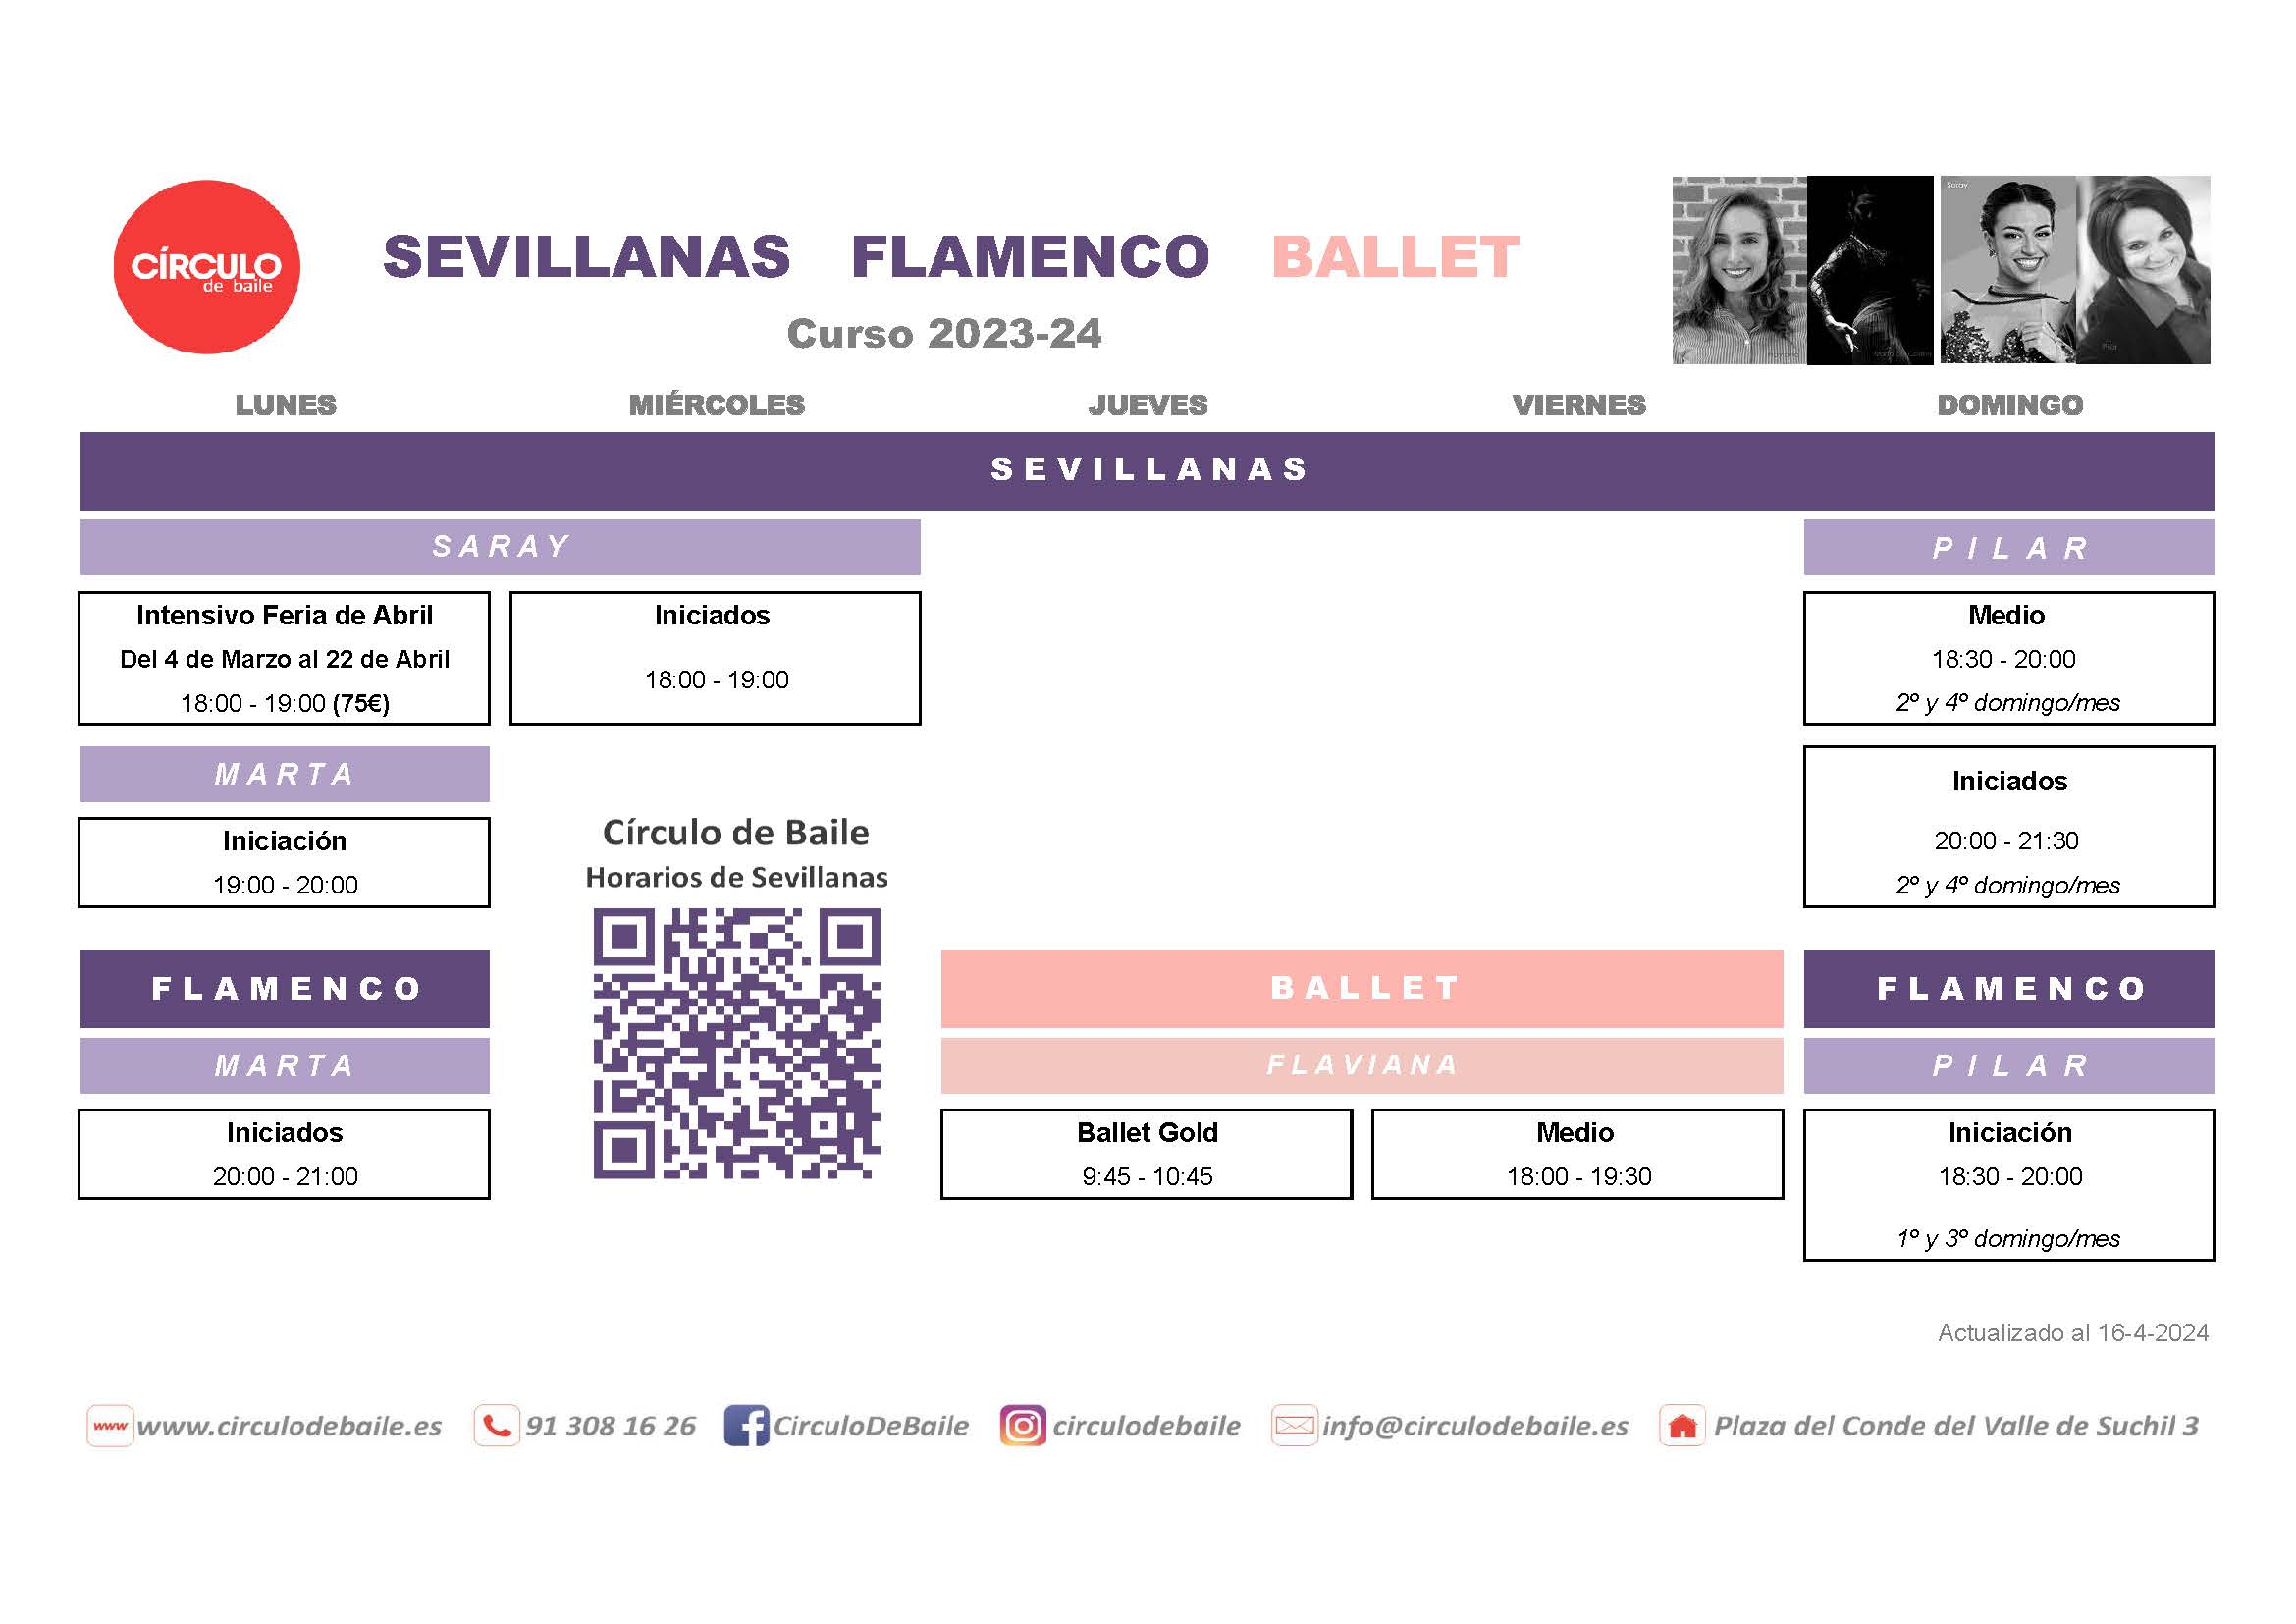 Horarios de Sevillanas, Flamenco y Ballet en Circulo de Baile